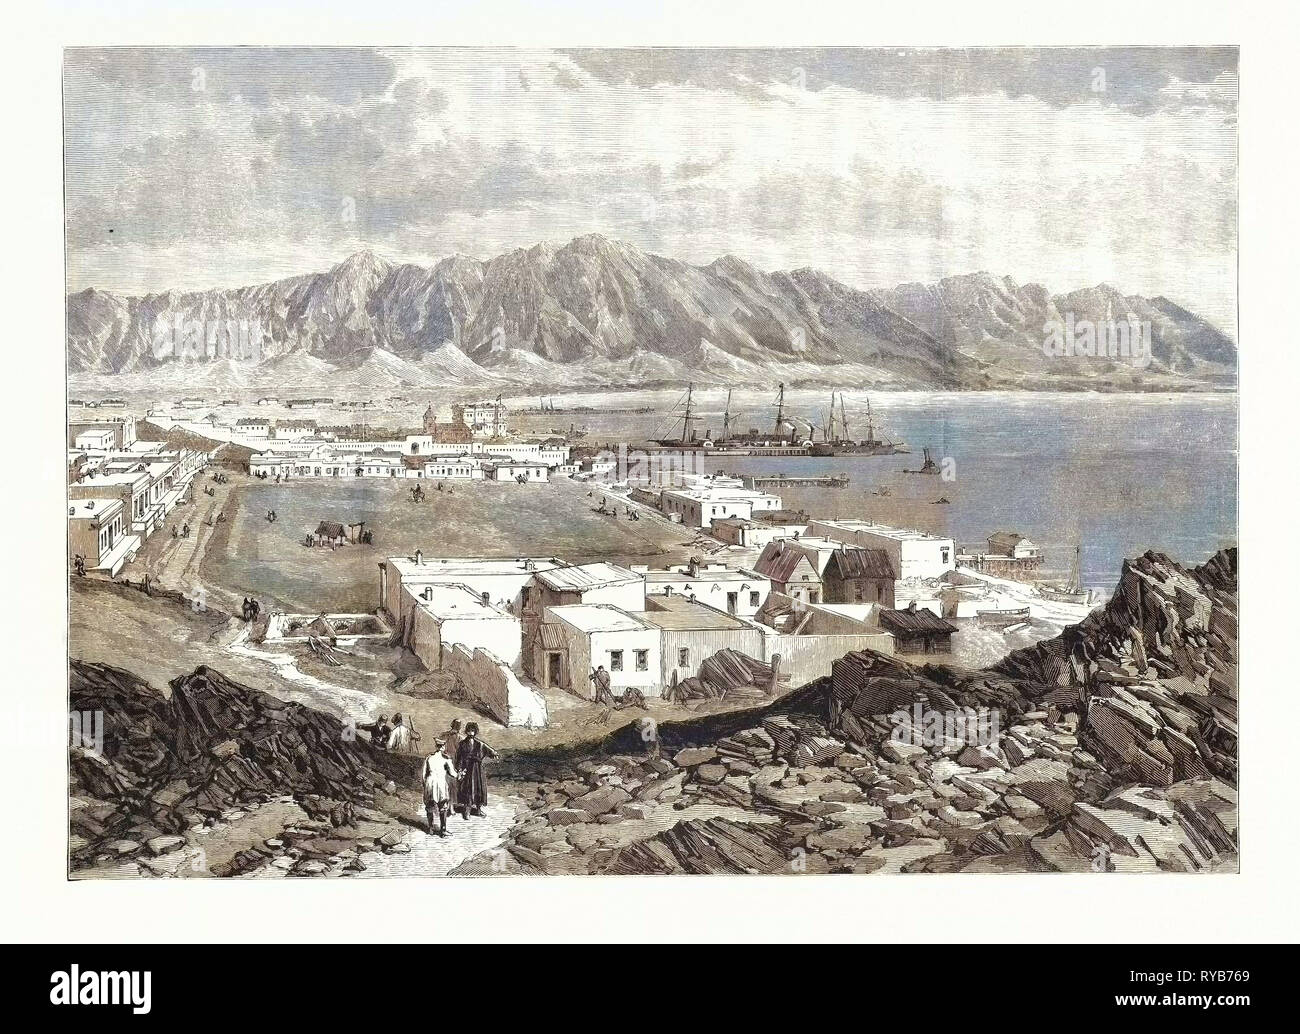 Russischen militärischen Positionen in Asien: Krasnovodsk, am Kaspischen Meer, 1885 Stockfoto